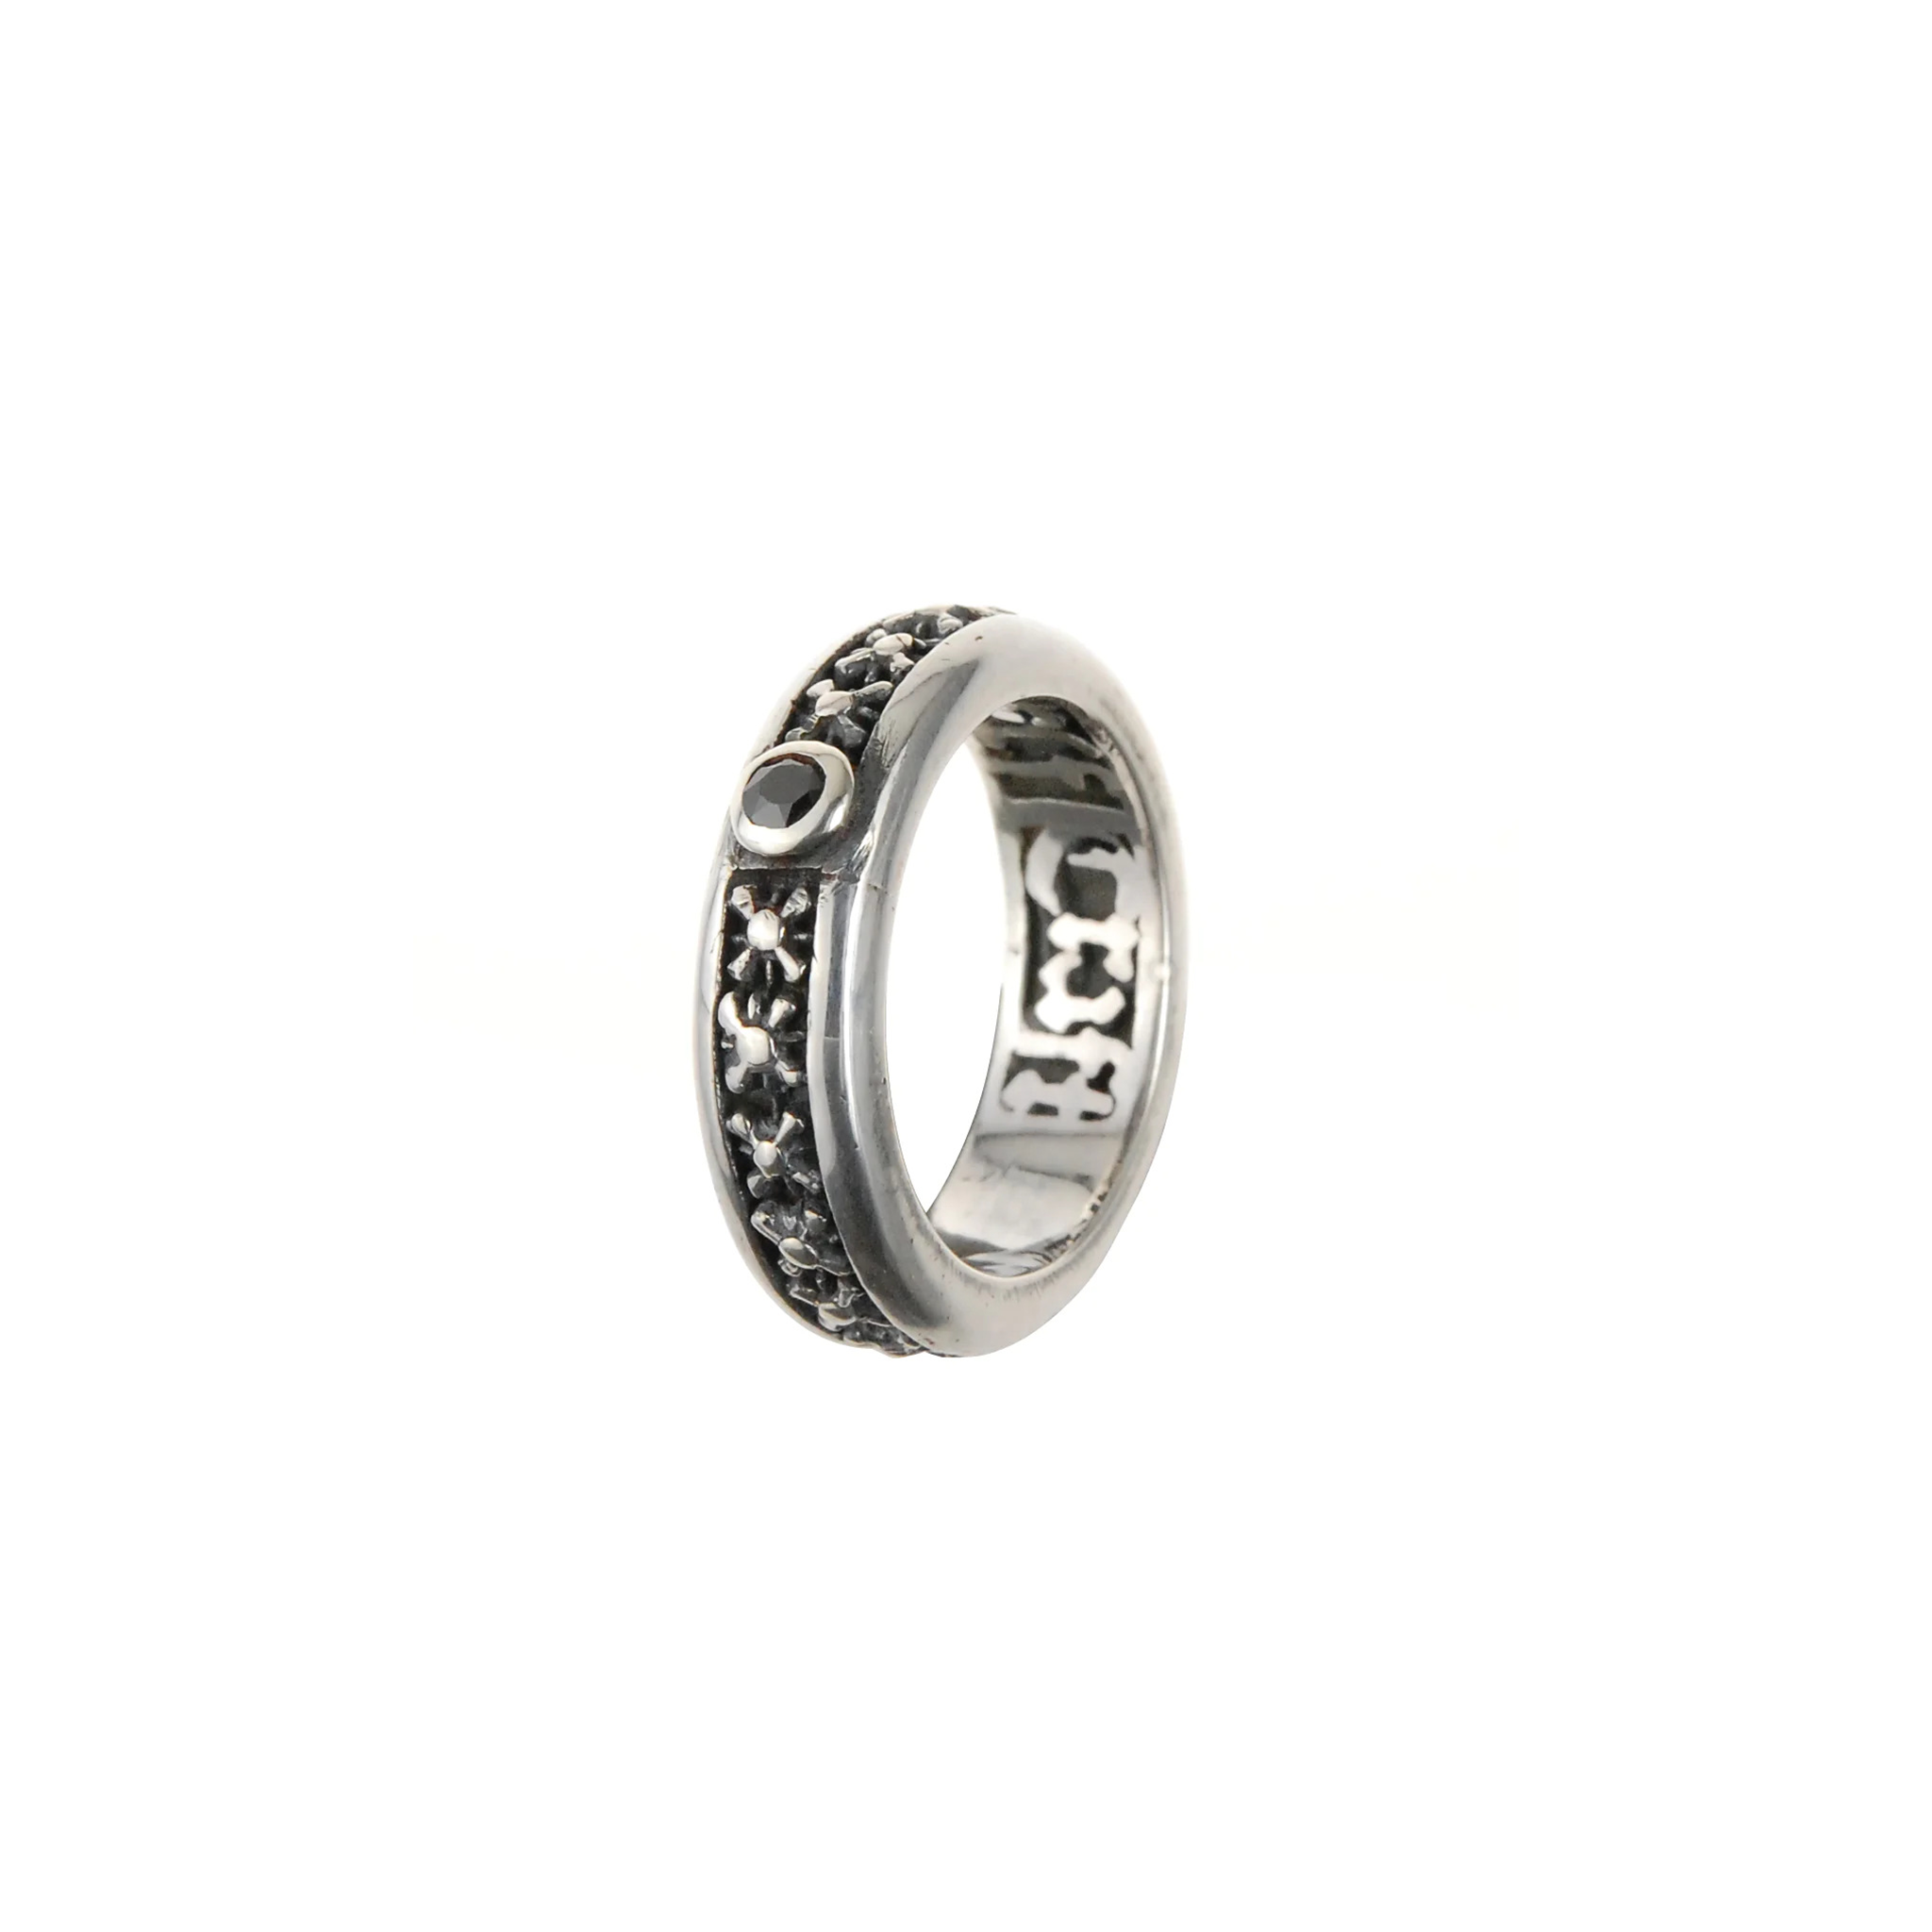 Silberner Ring von Elf Craft mit Miniatur Morgensternen und einem eingefassten schwarzen Zirkonia-Stein - stehend